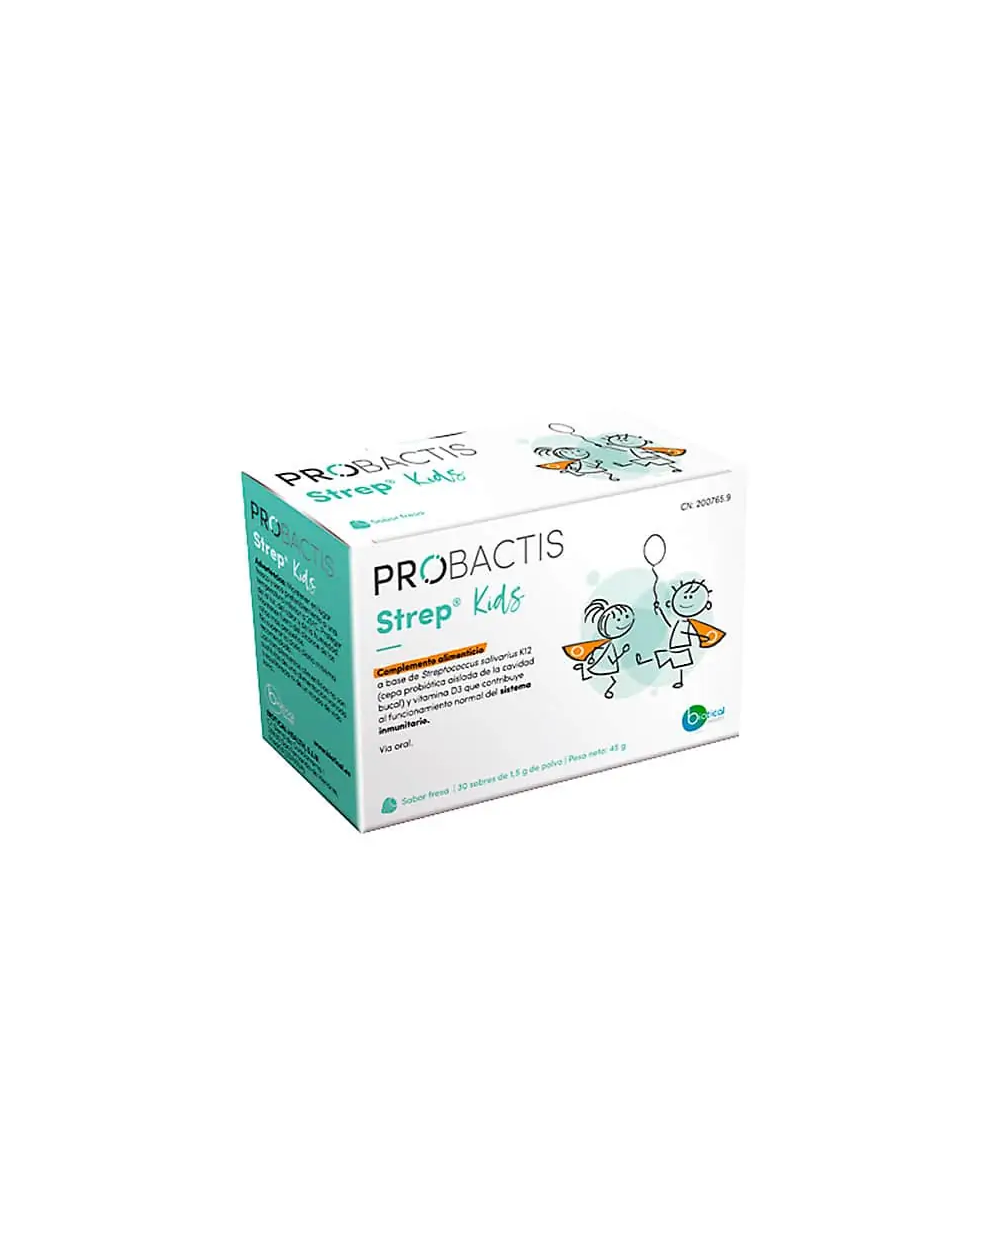 Probactis - Probactis Strep® Kids es el probiótico para niños menores de 5  años que viene en formato de 30 sobres y Probactis Strep® en formato  pastillas para chupar para adultos y